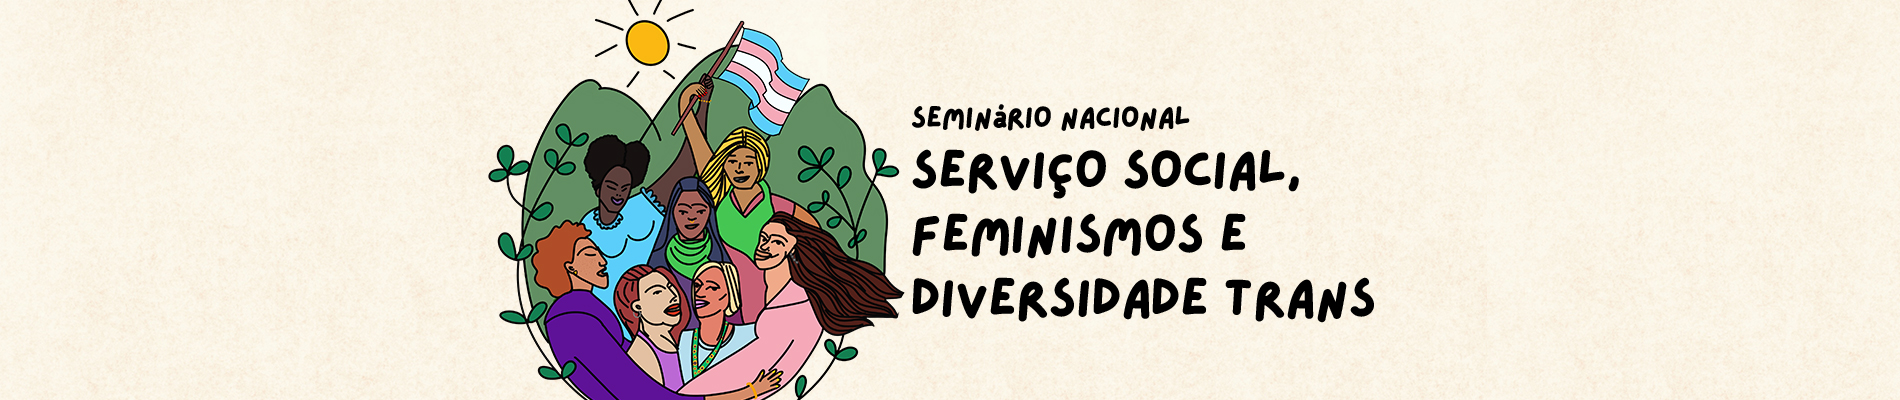 Saiba tudo sobre o Seminário Nacional Serviço Social, Feminismos e Diversidade Trans!